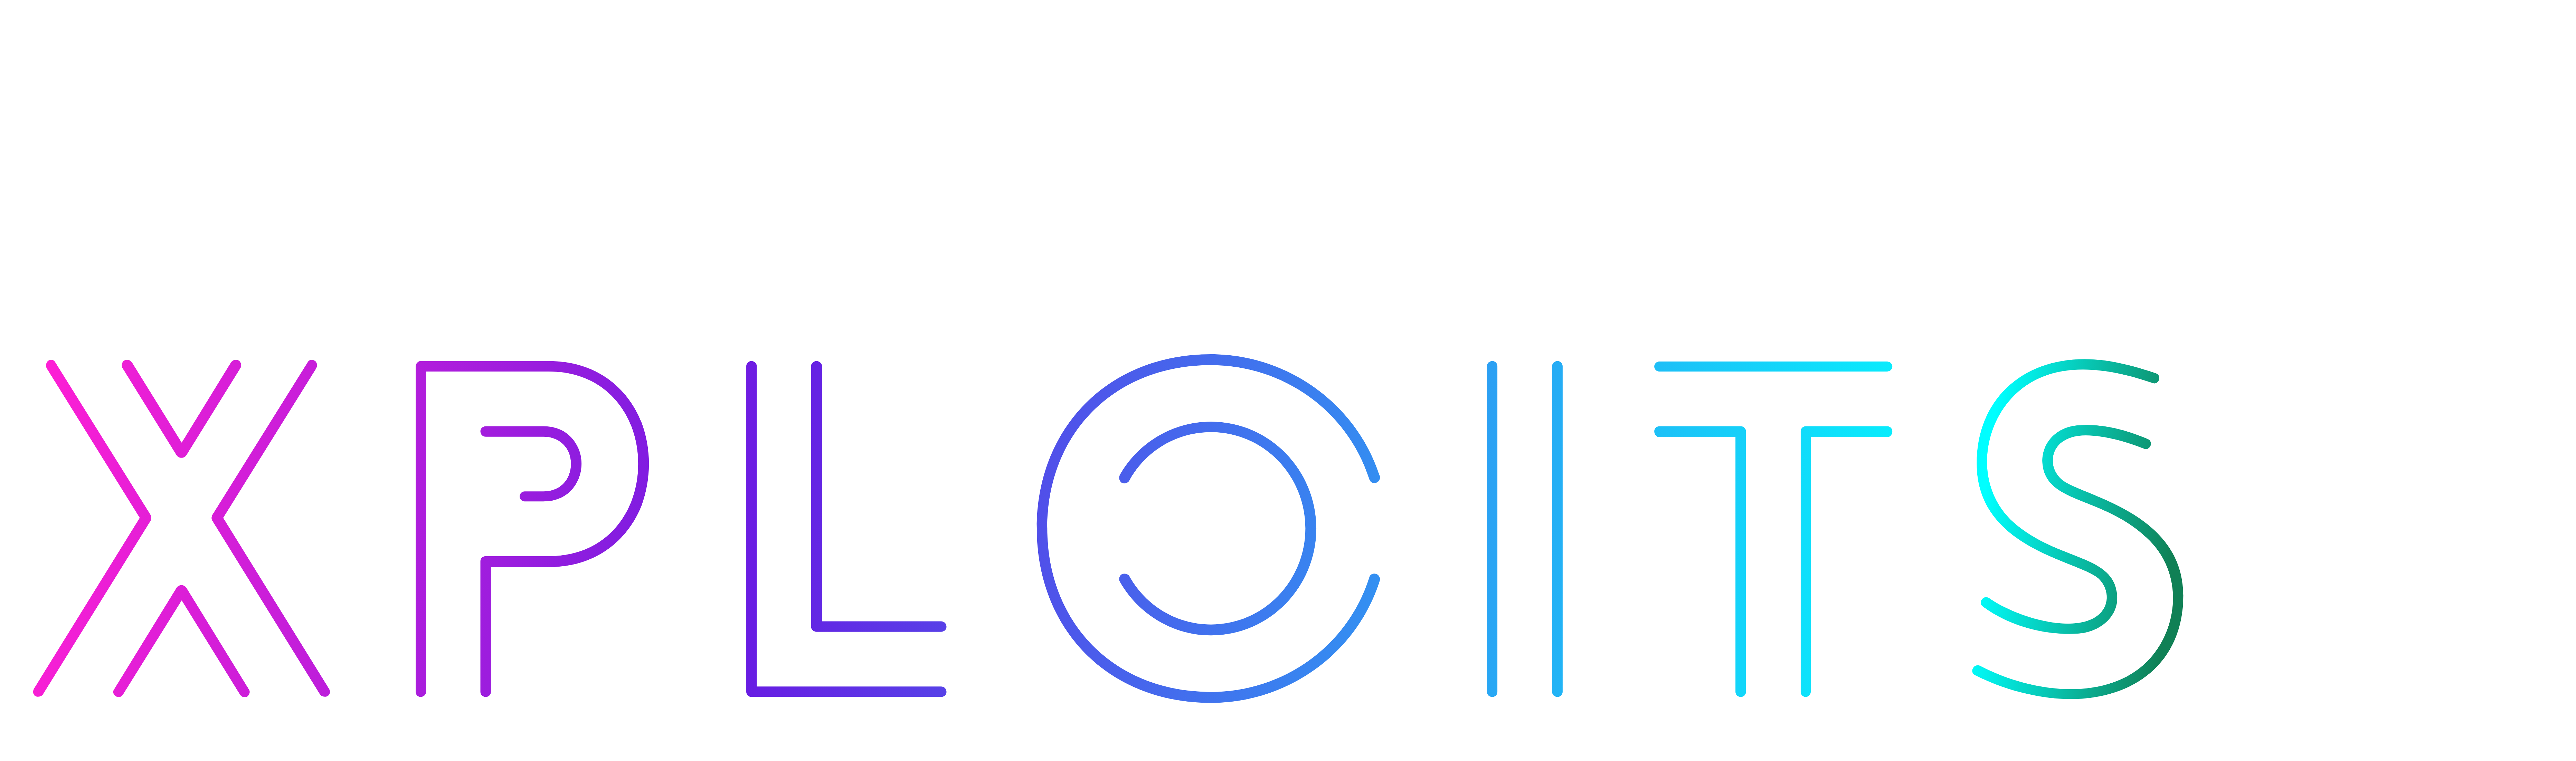 xploits logo